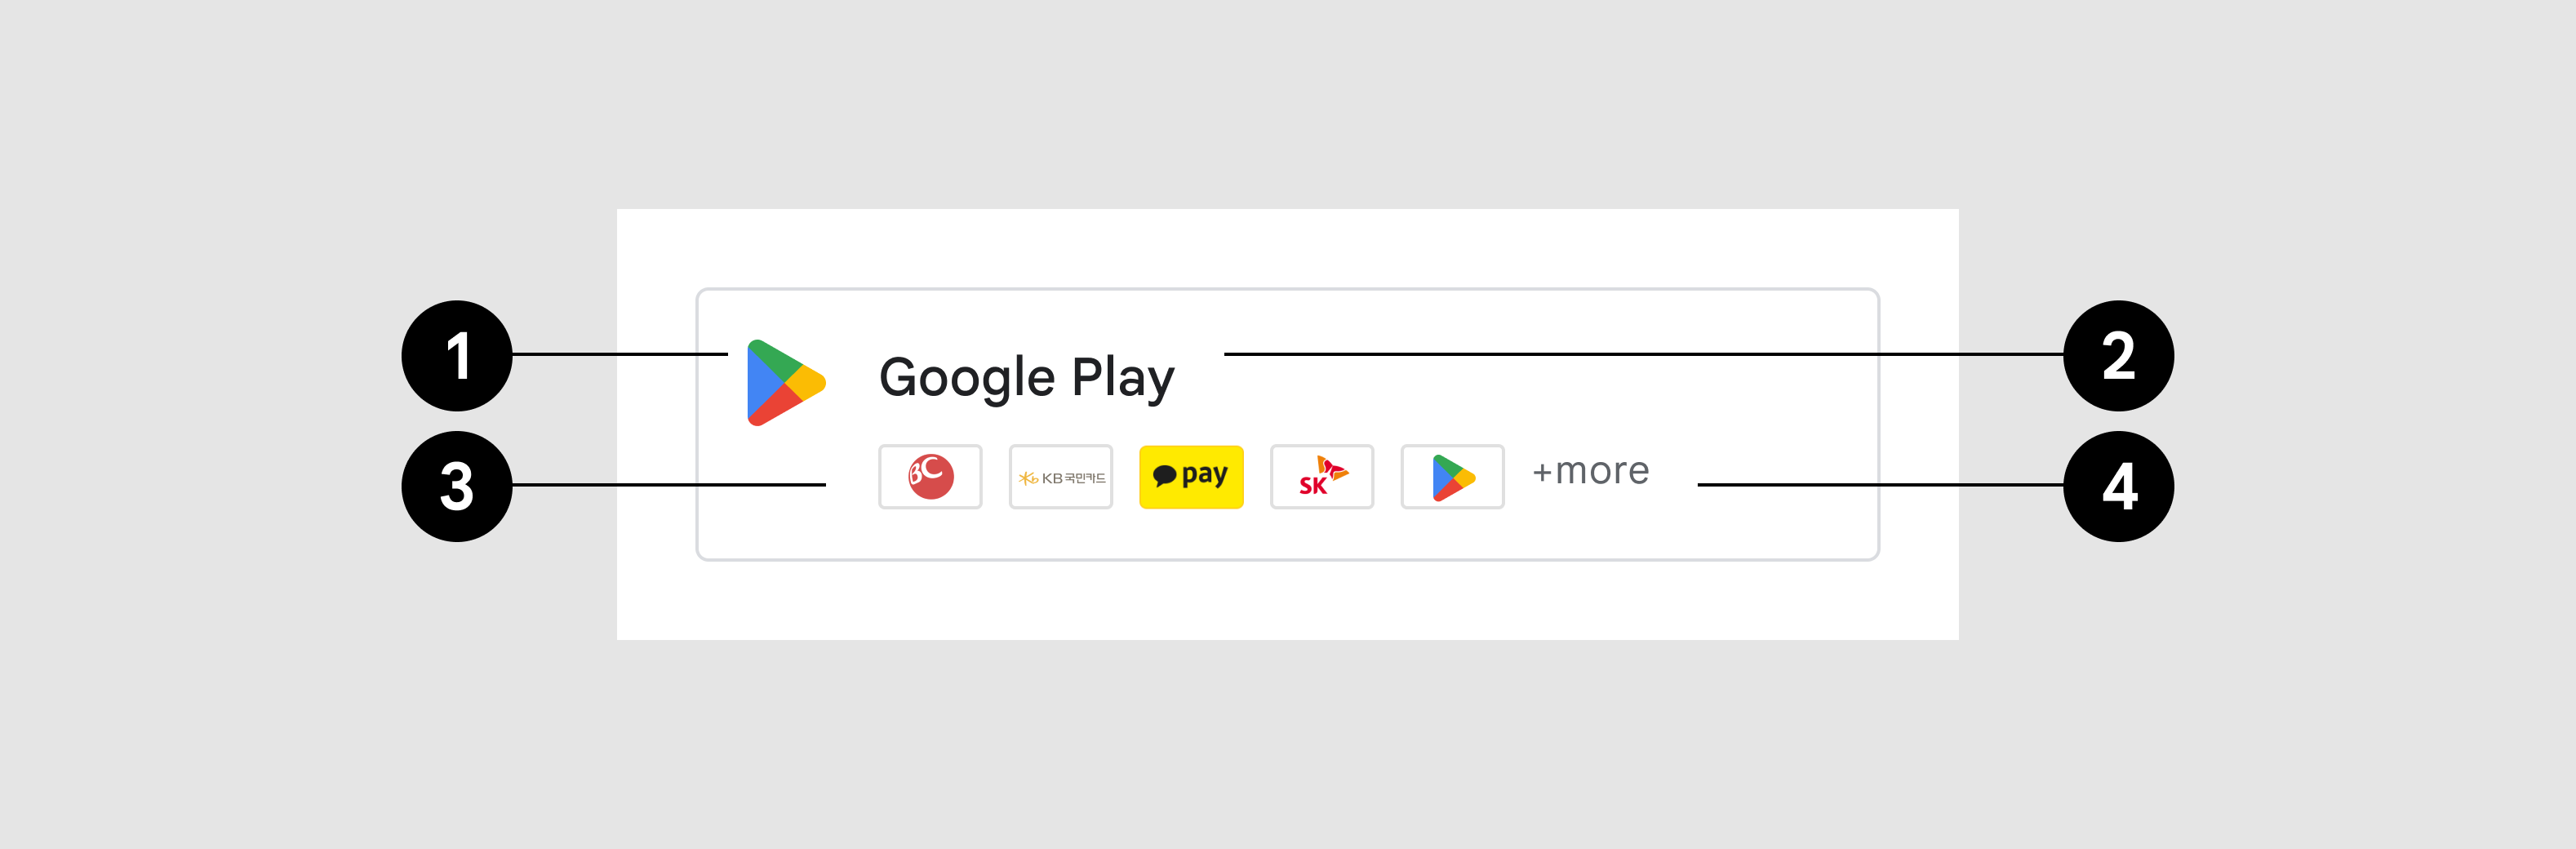 die Google Play-Schaltfläche